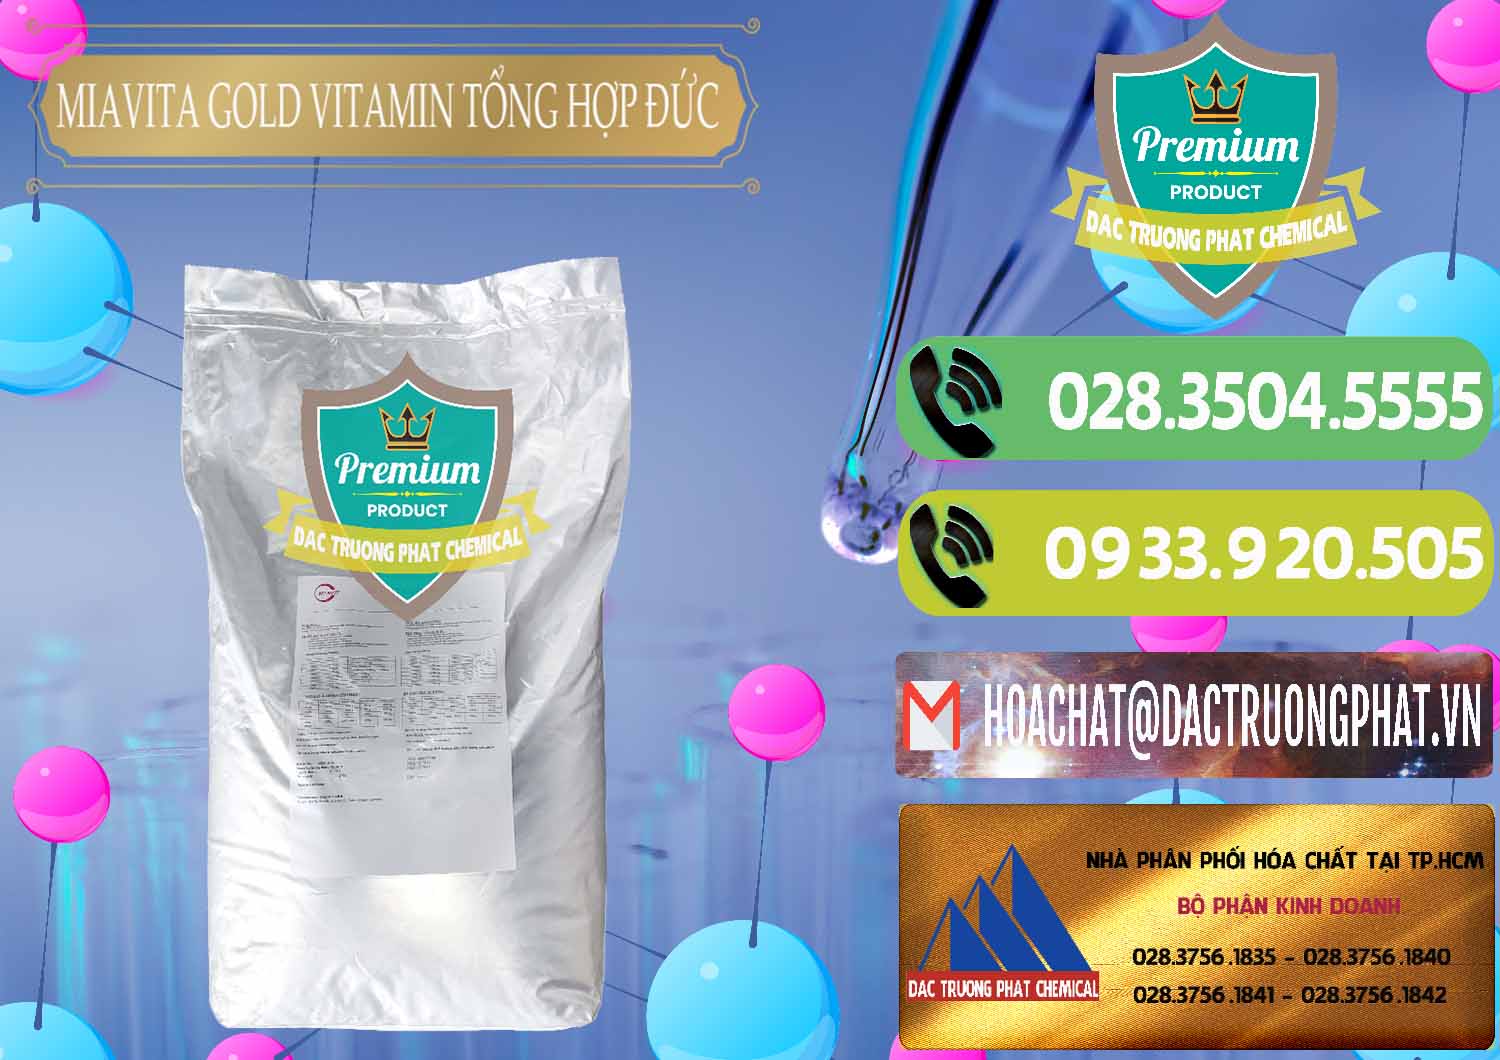 Chuyên cung ứng _ bán Vitamin Tổng Hợp Miavita Gold Đức Germany - 0307 - Đơn vị cung cấp và bán hóa chất tại TP.HCM - hoachatmientay.vn